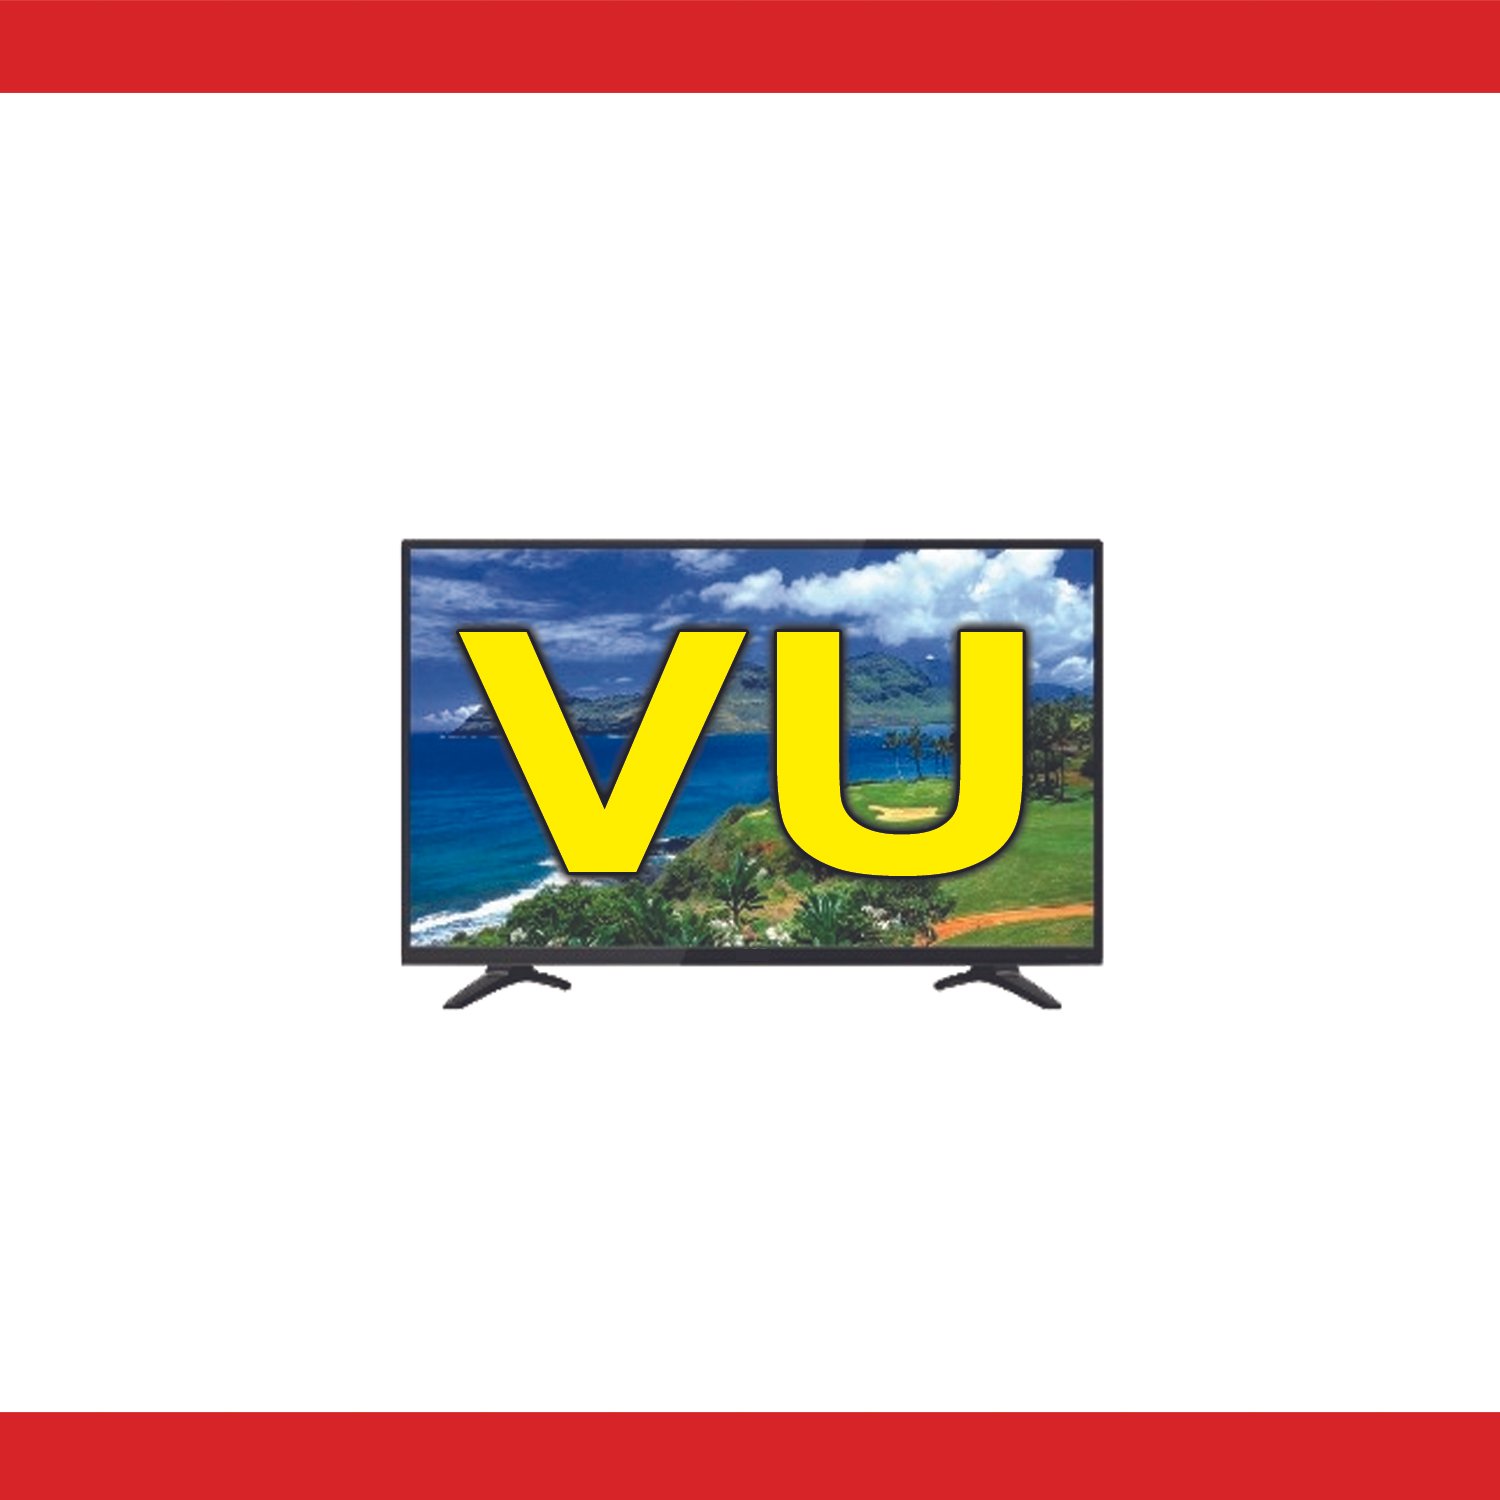 VU Iconium TV Repair & Services in Rajahmundry - 9032343737